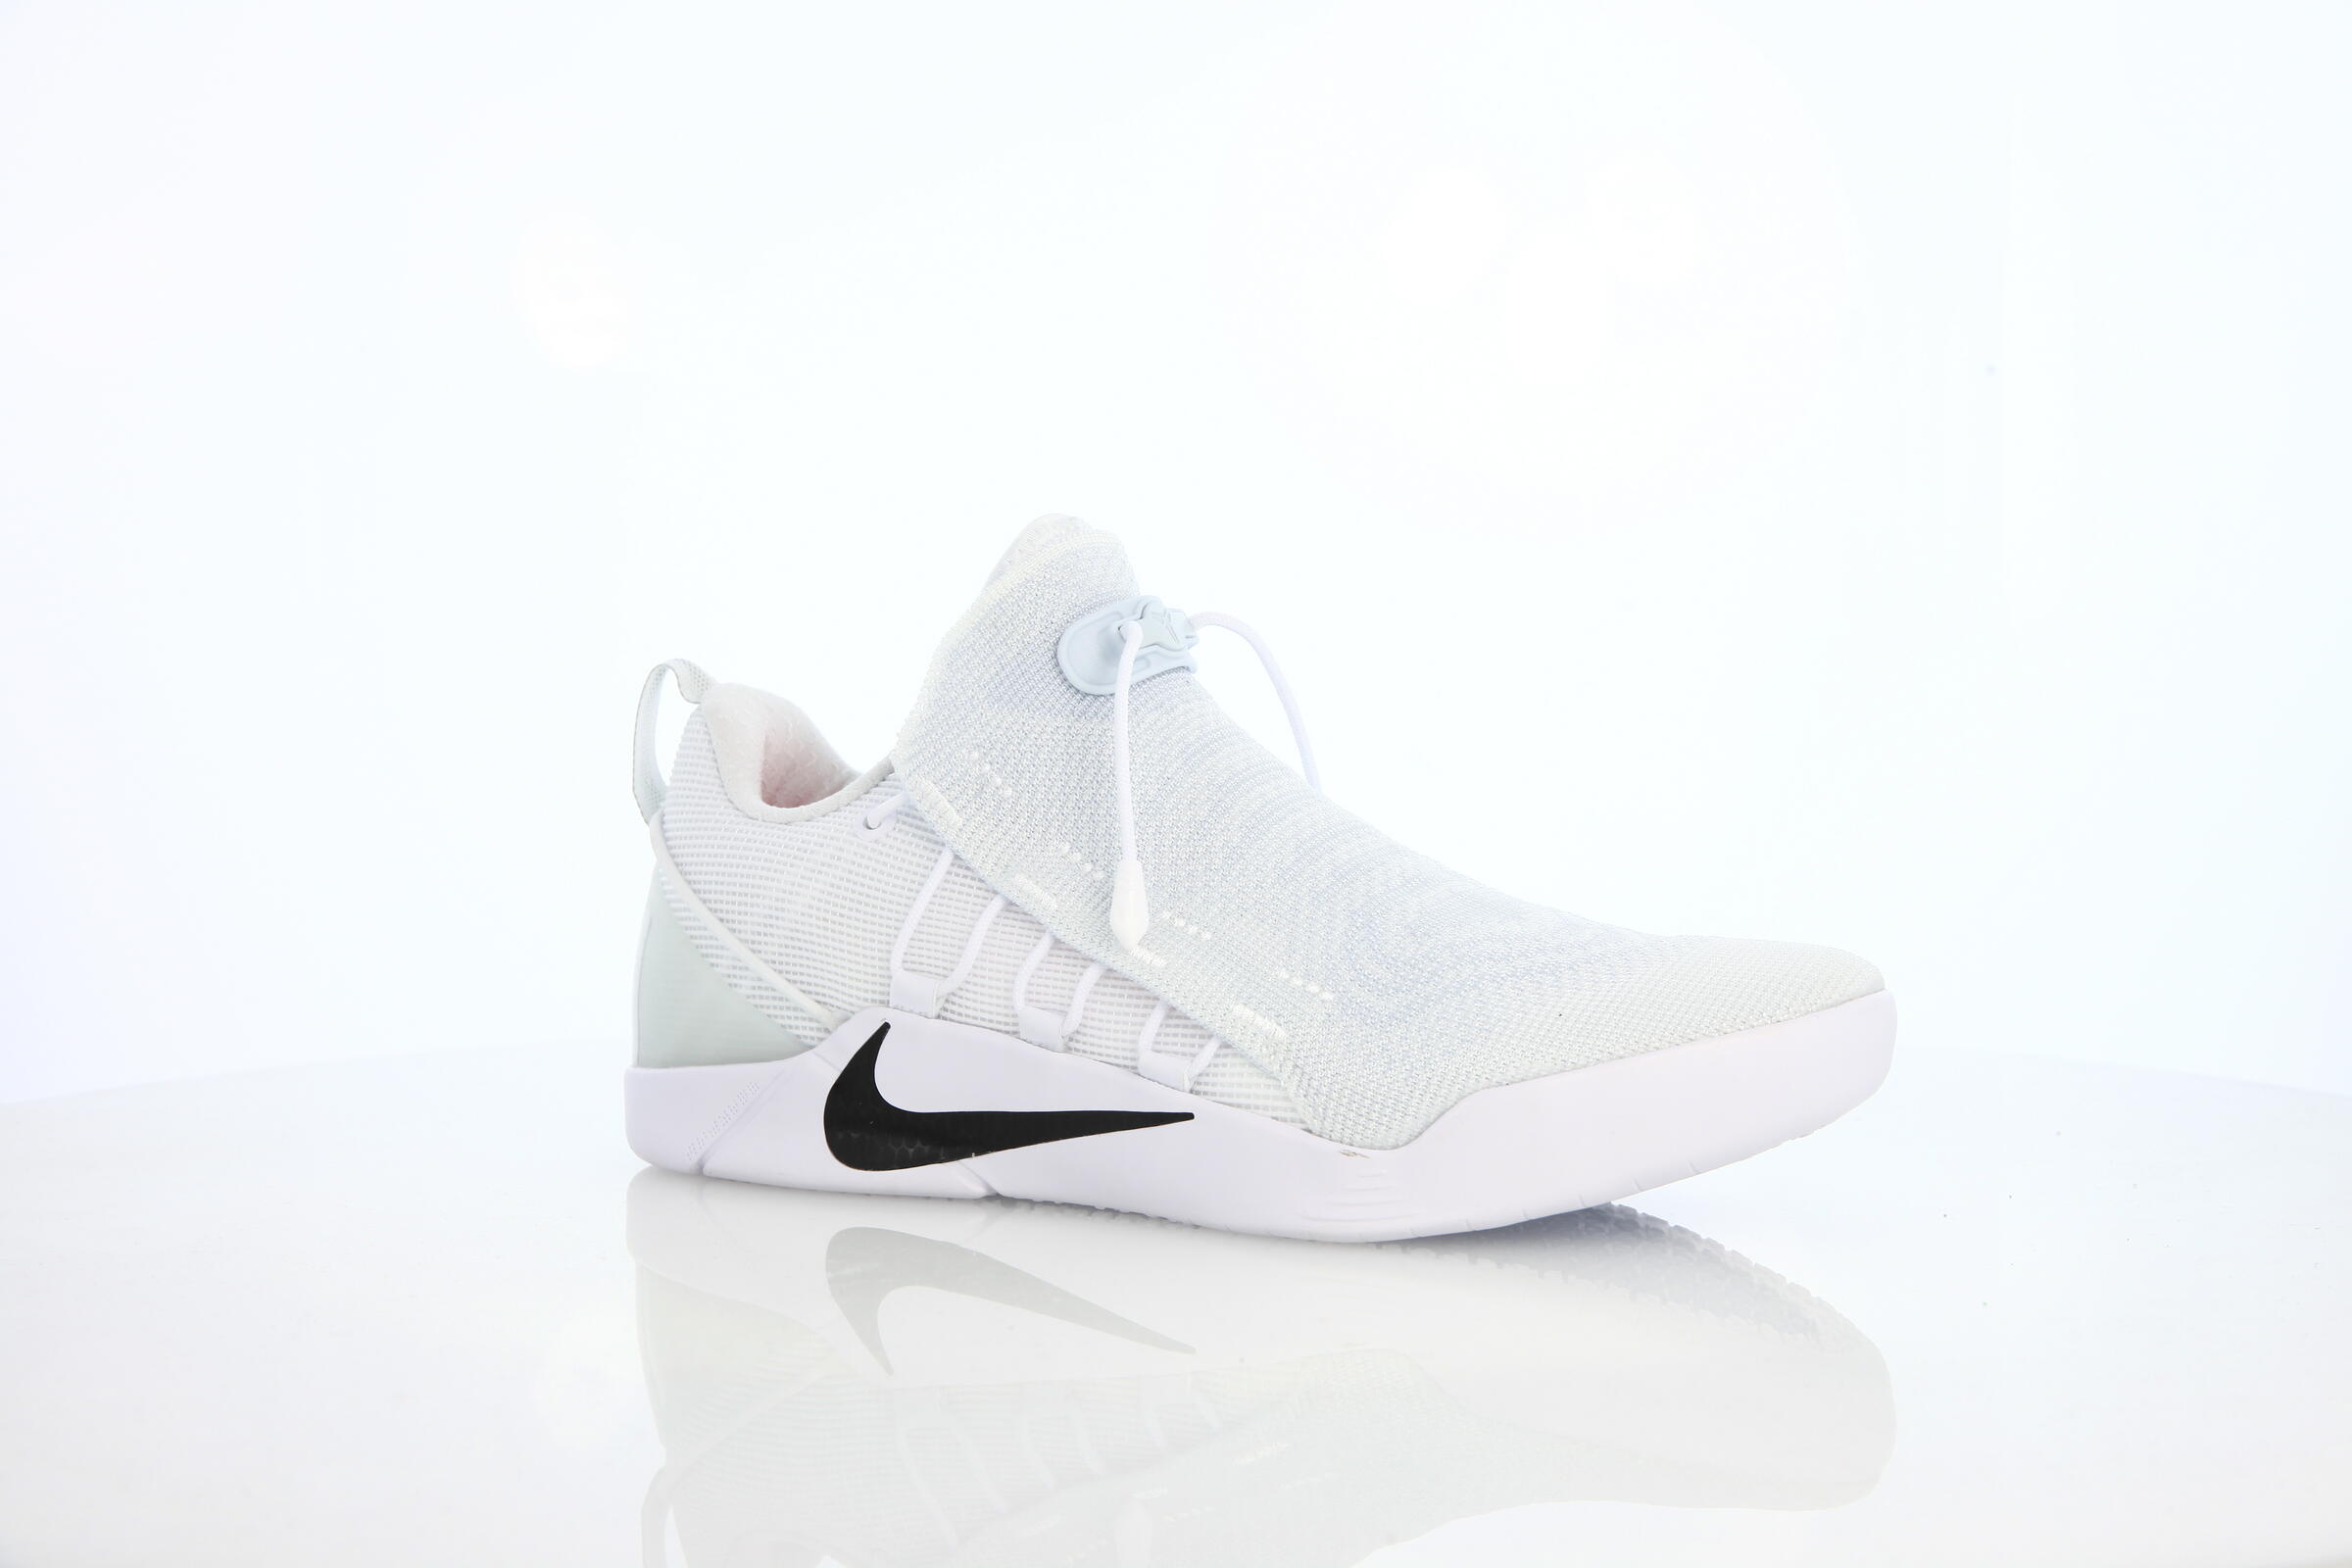 Nike Kobe A.d. Nxt "White"